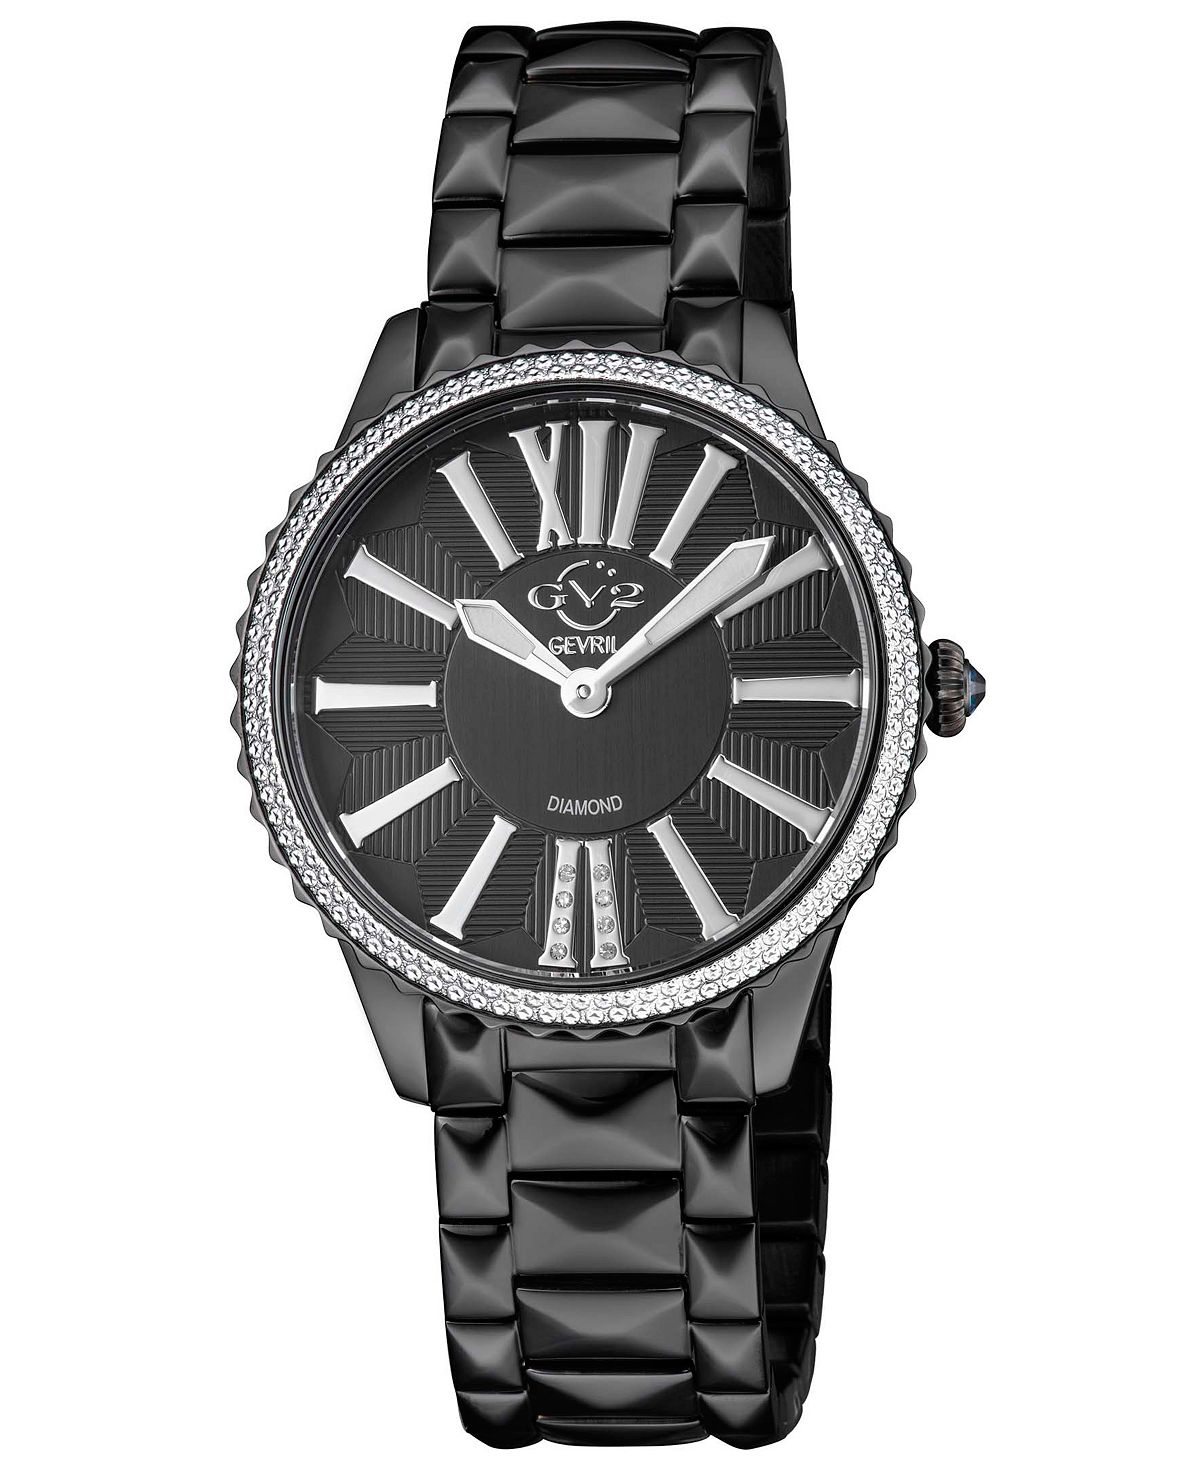 цена Женские часы Siena швейцарские кварцевые черные из нержавеющей стали 37 мм GV2 by Gevril, черный